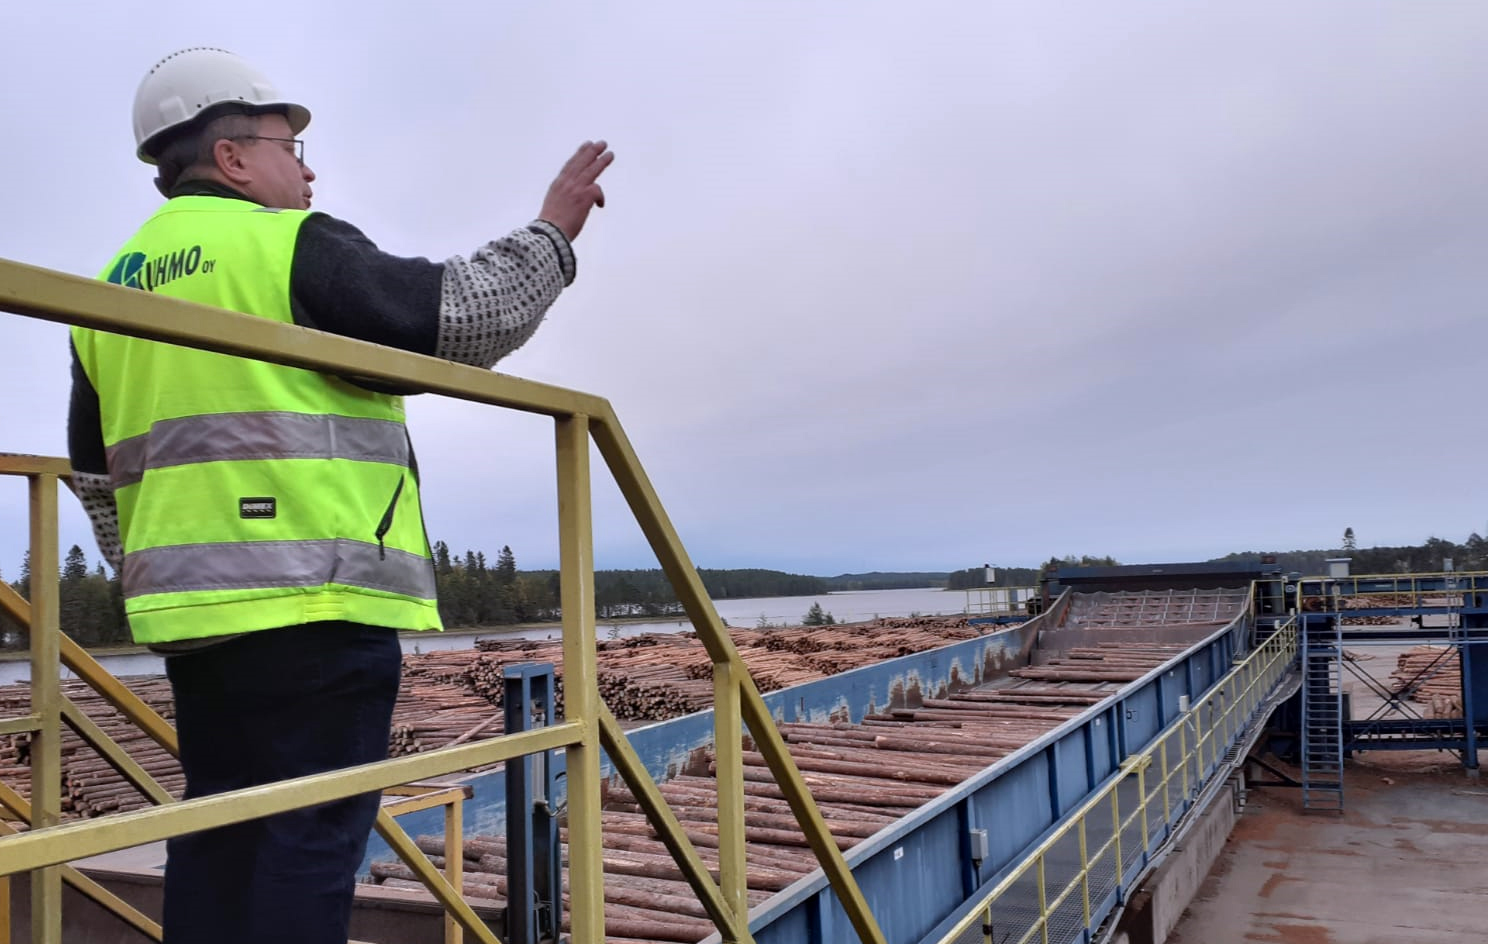 Tommi Ruhan johtama Kuhmon saha ostaa vuodessa lähes miljoona kuutiota puuta. Kuva: Hannes Mäntyranta